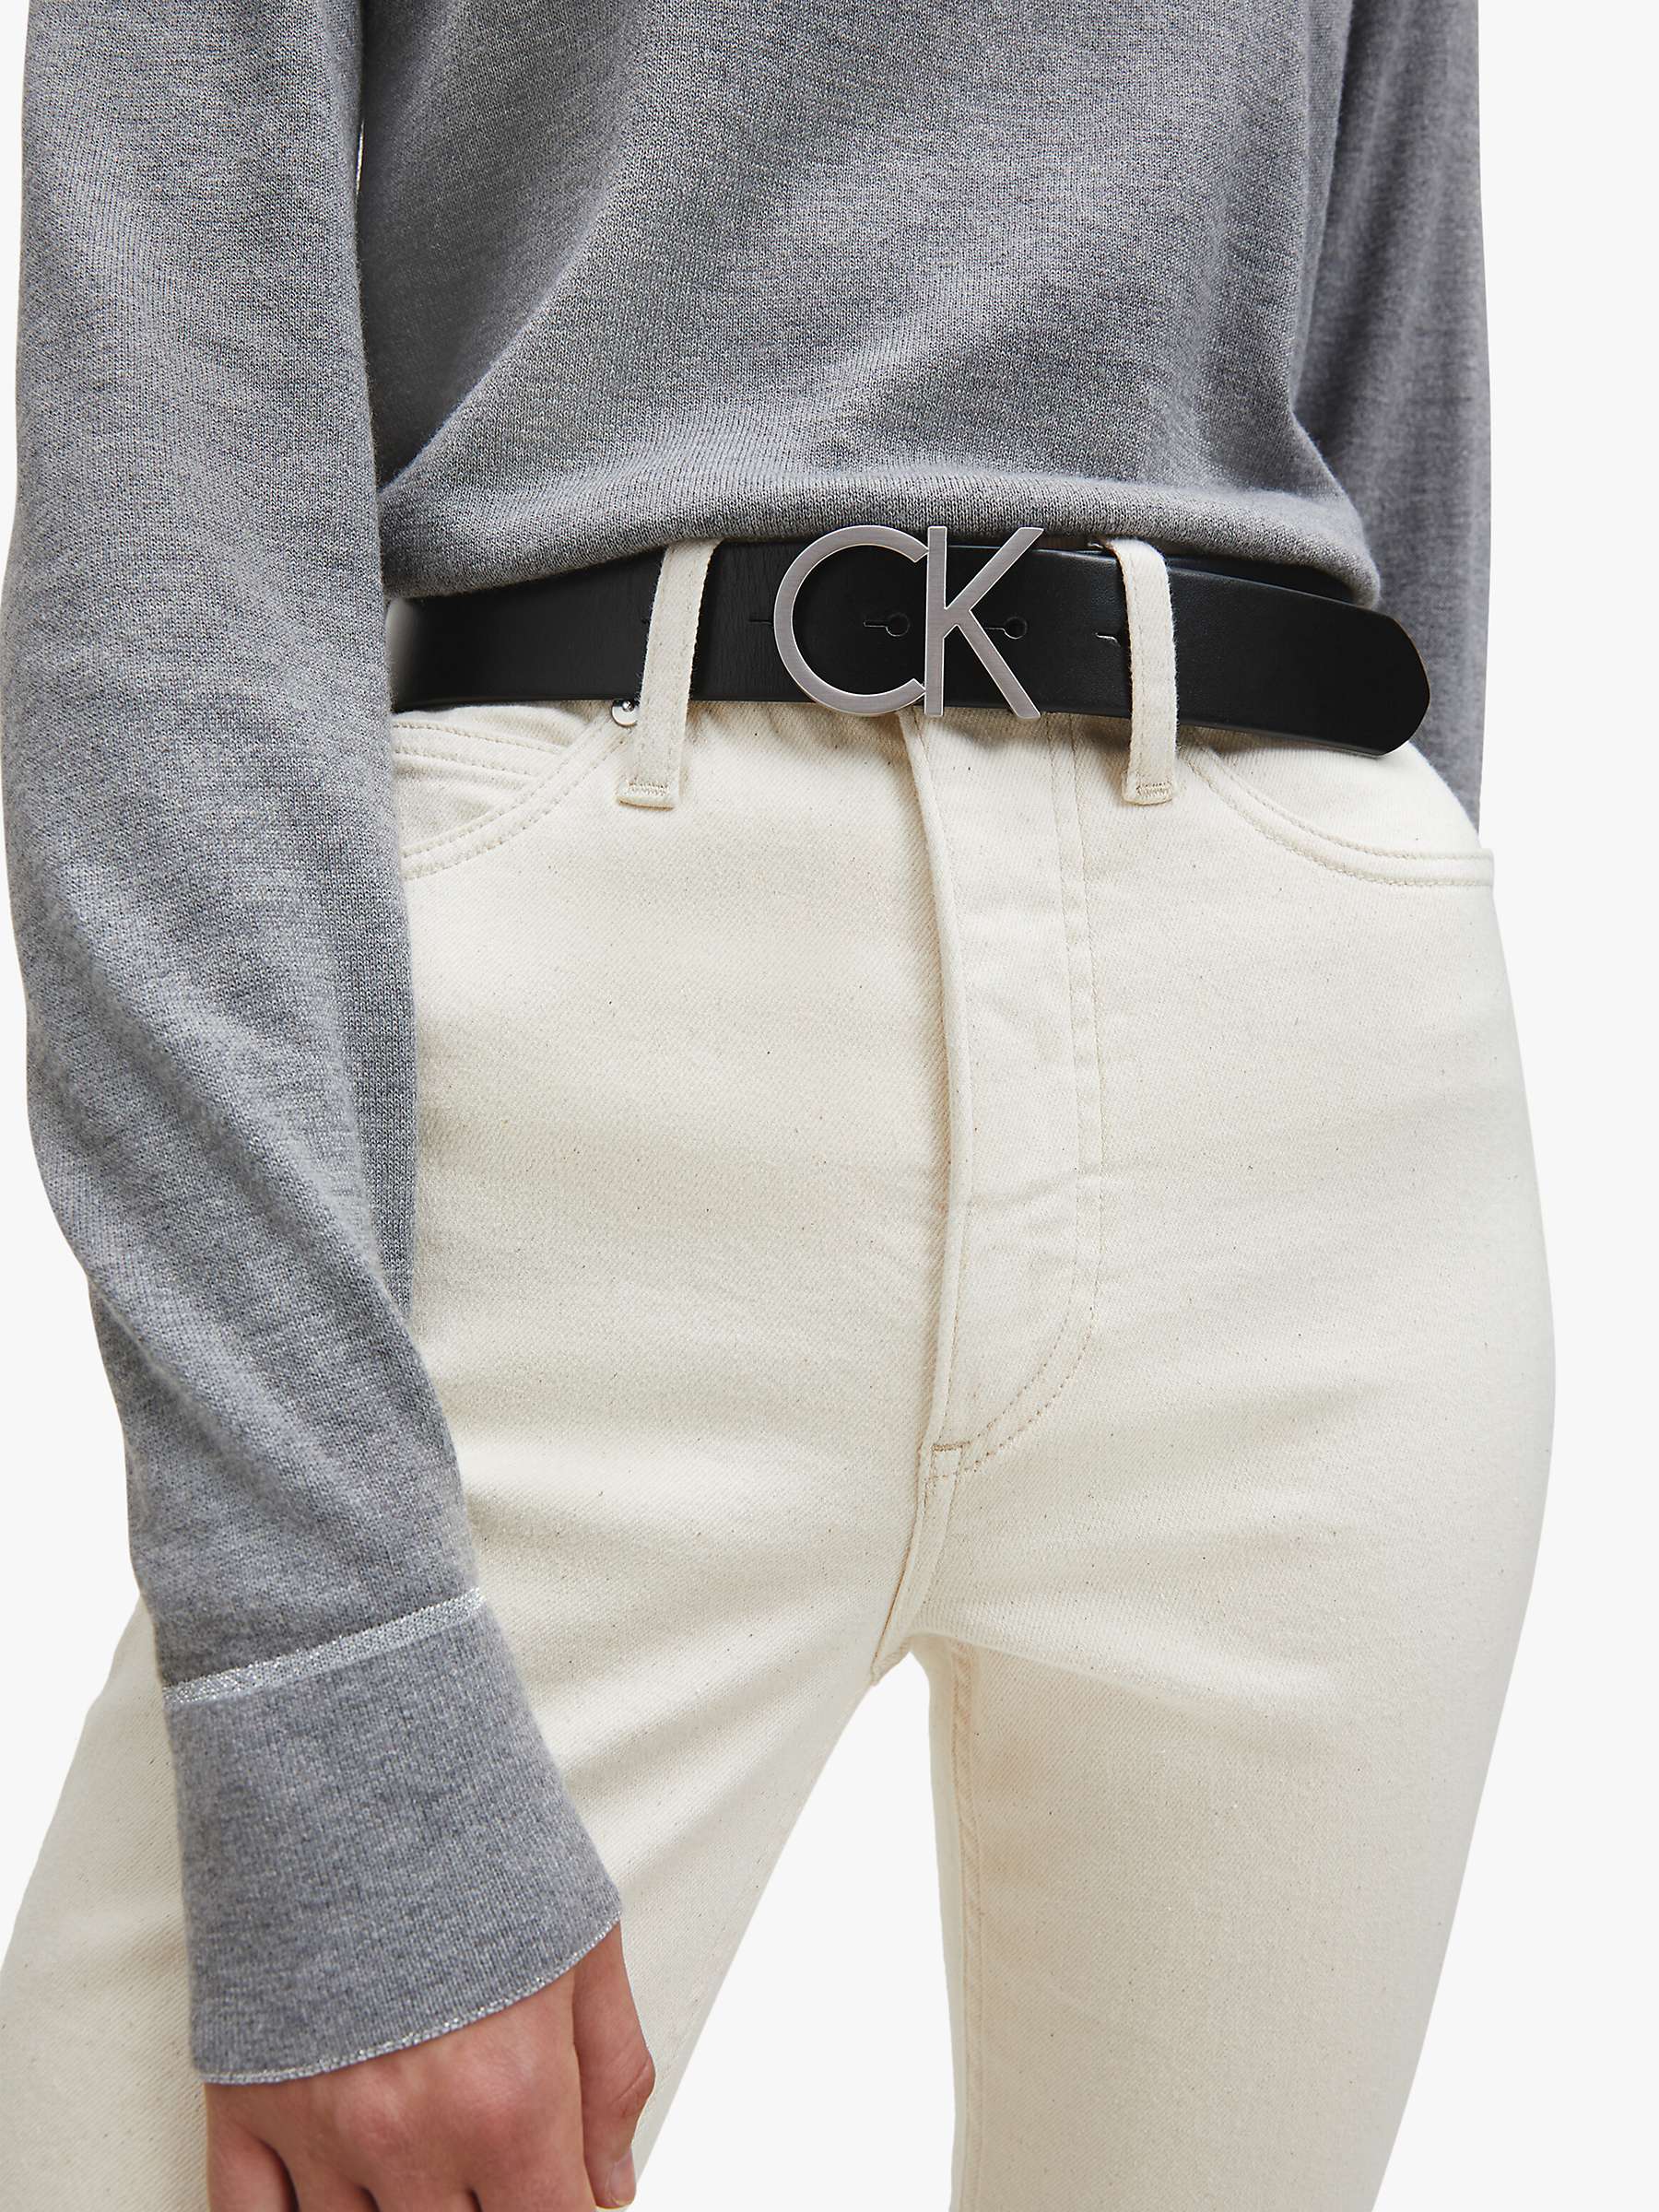 Buy Calvin Klein Adjustable Leather Belt, Black Online at johnlewis.com